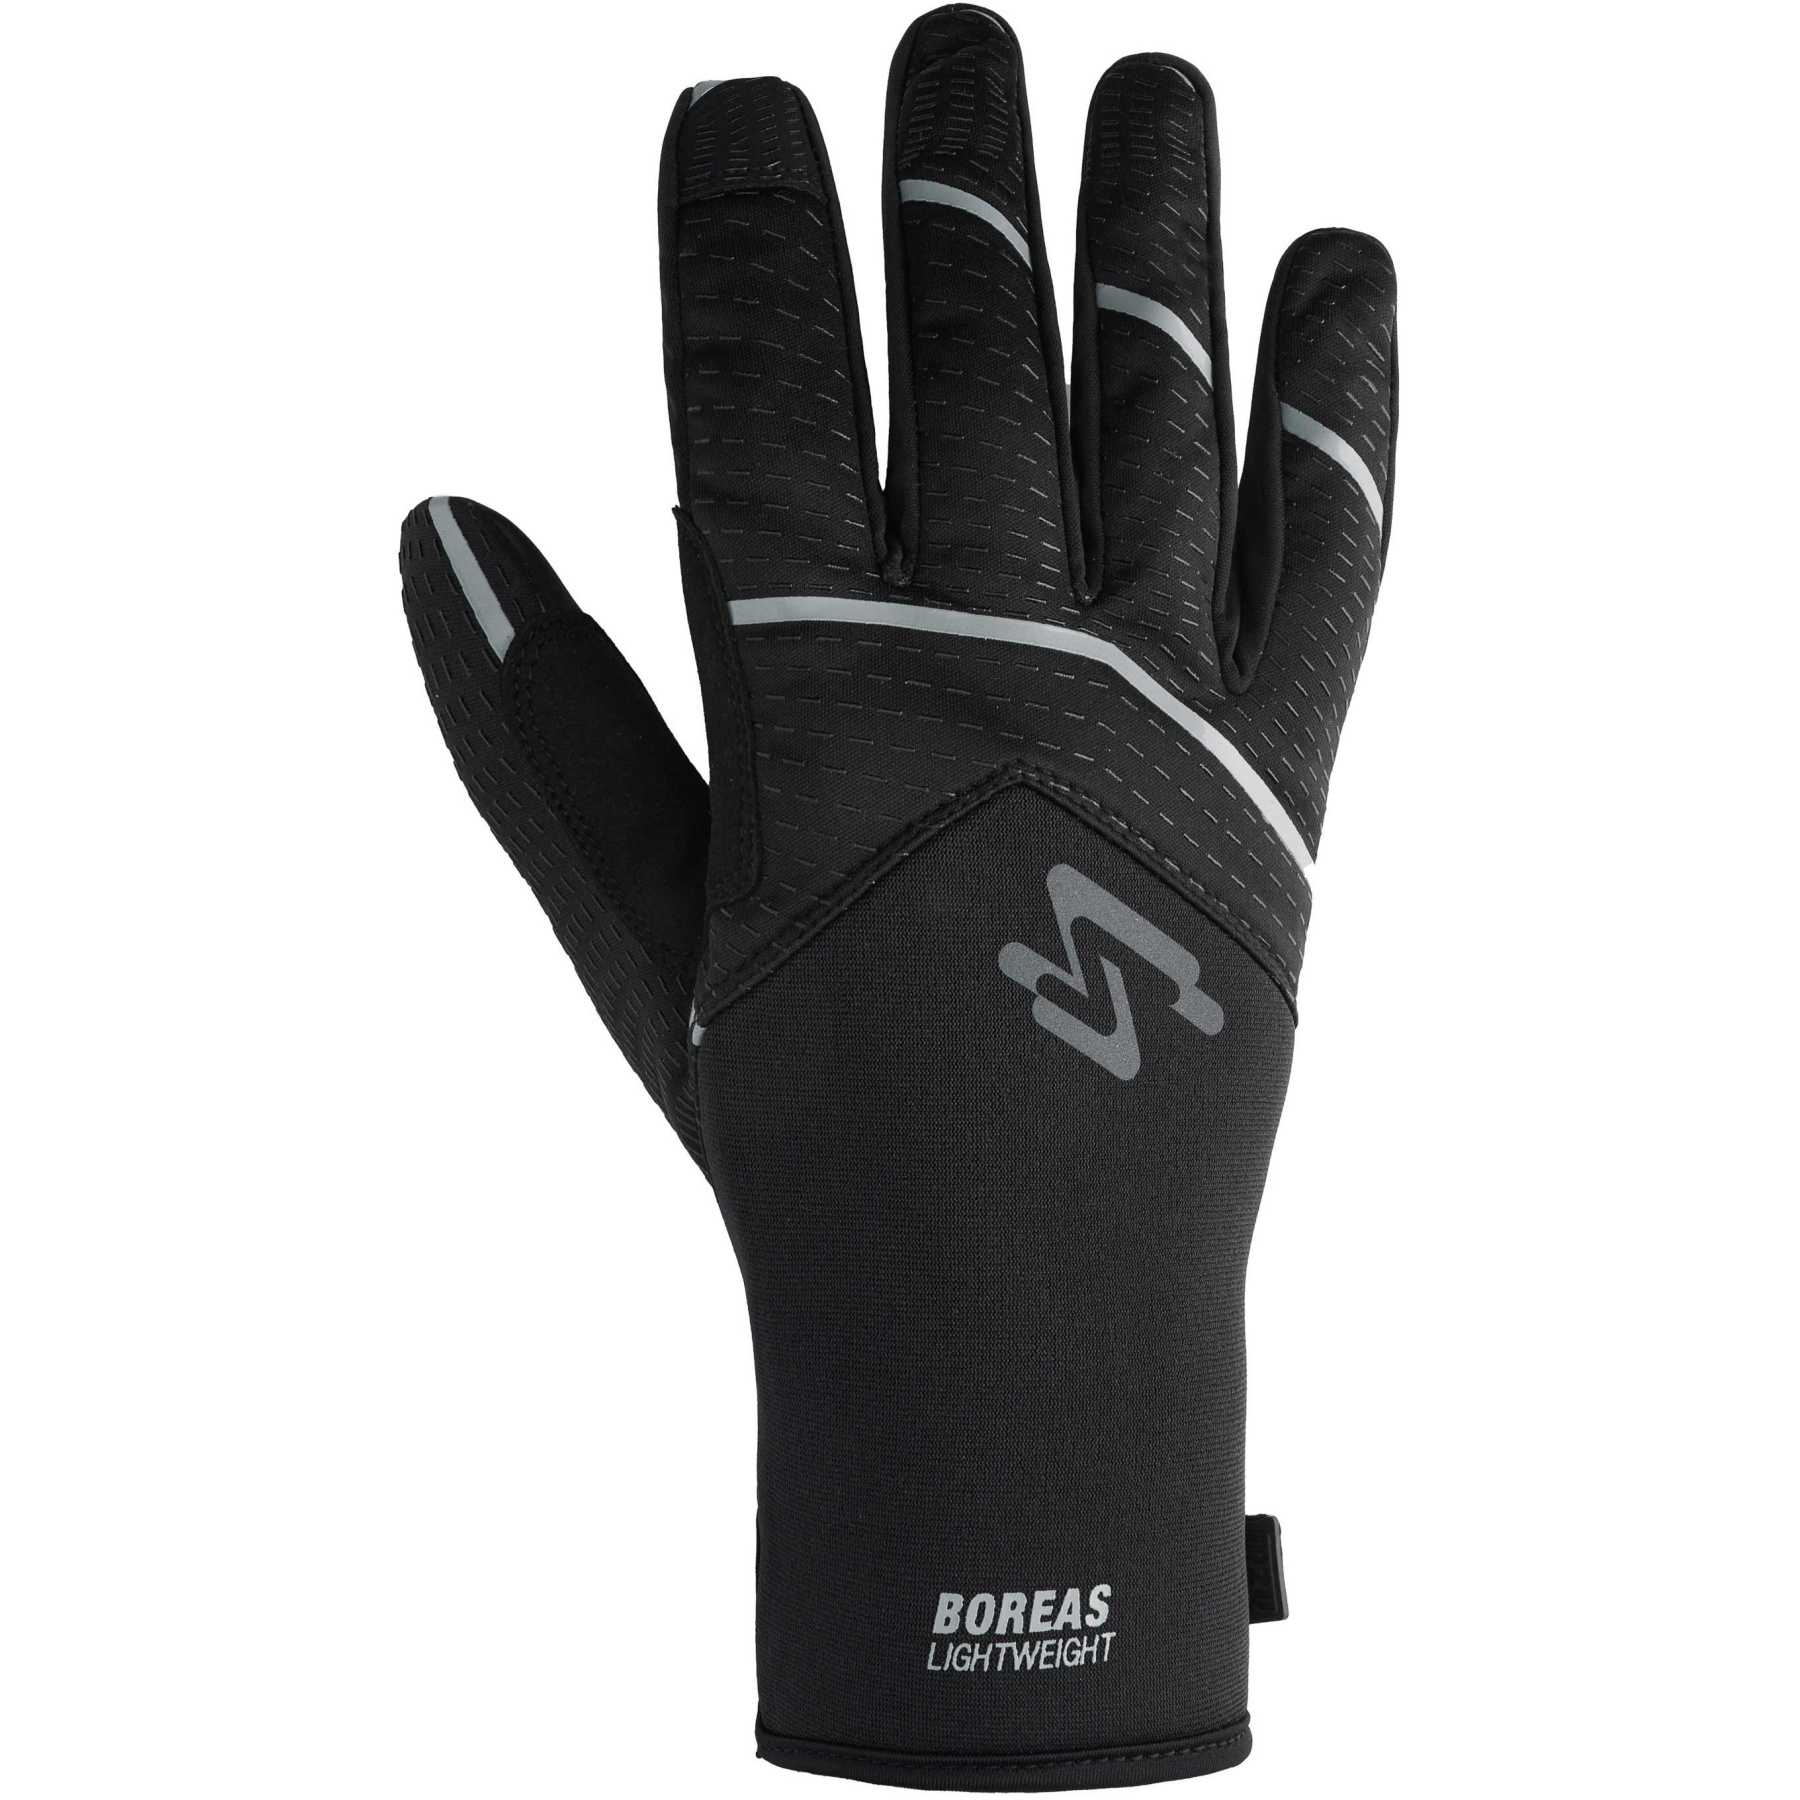 Produktbild von Spiuk Boreas Handschuhe - schwarz/grau